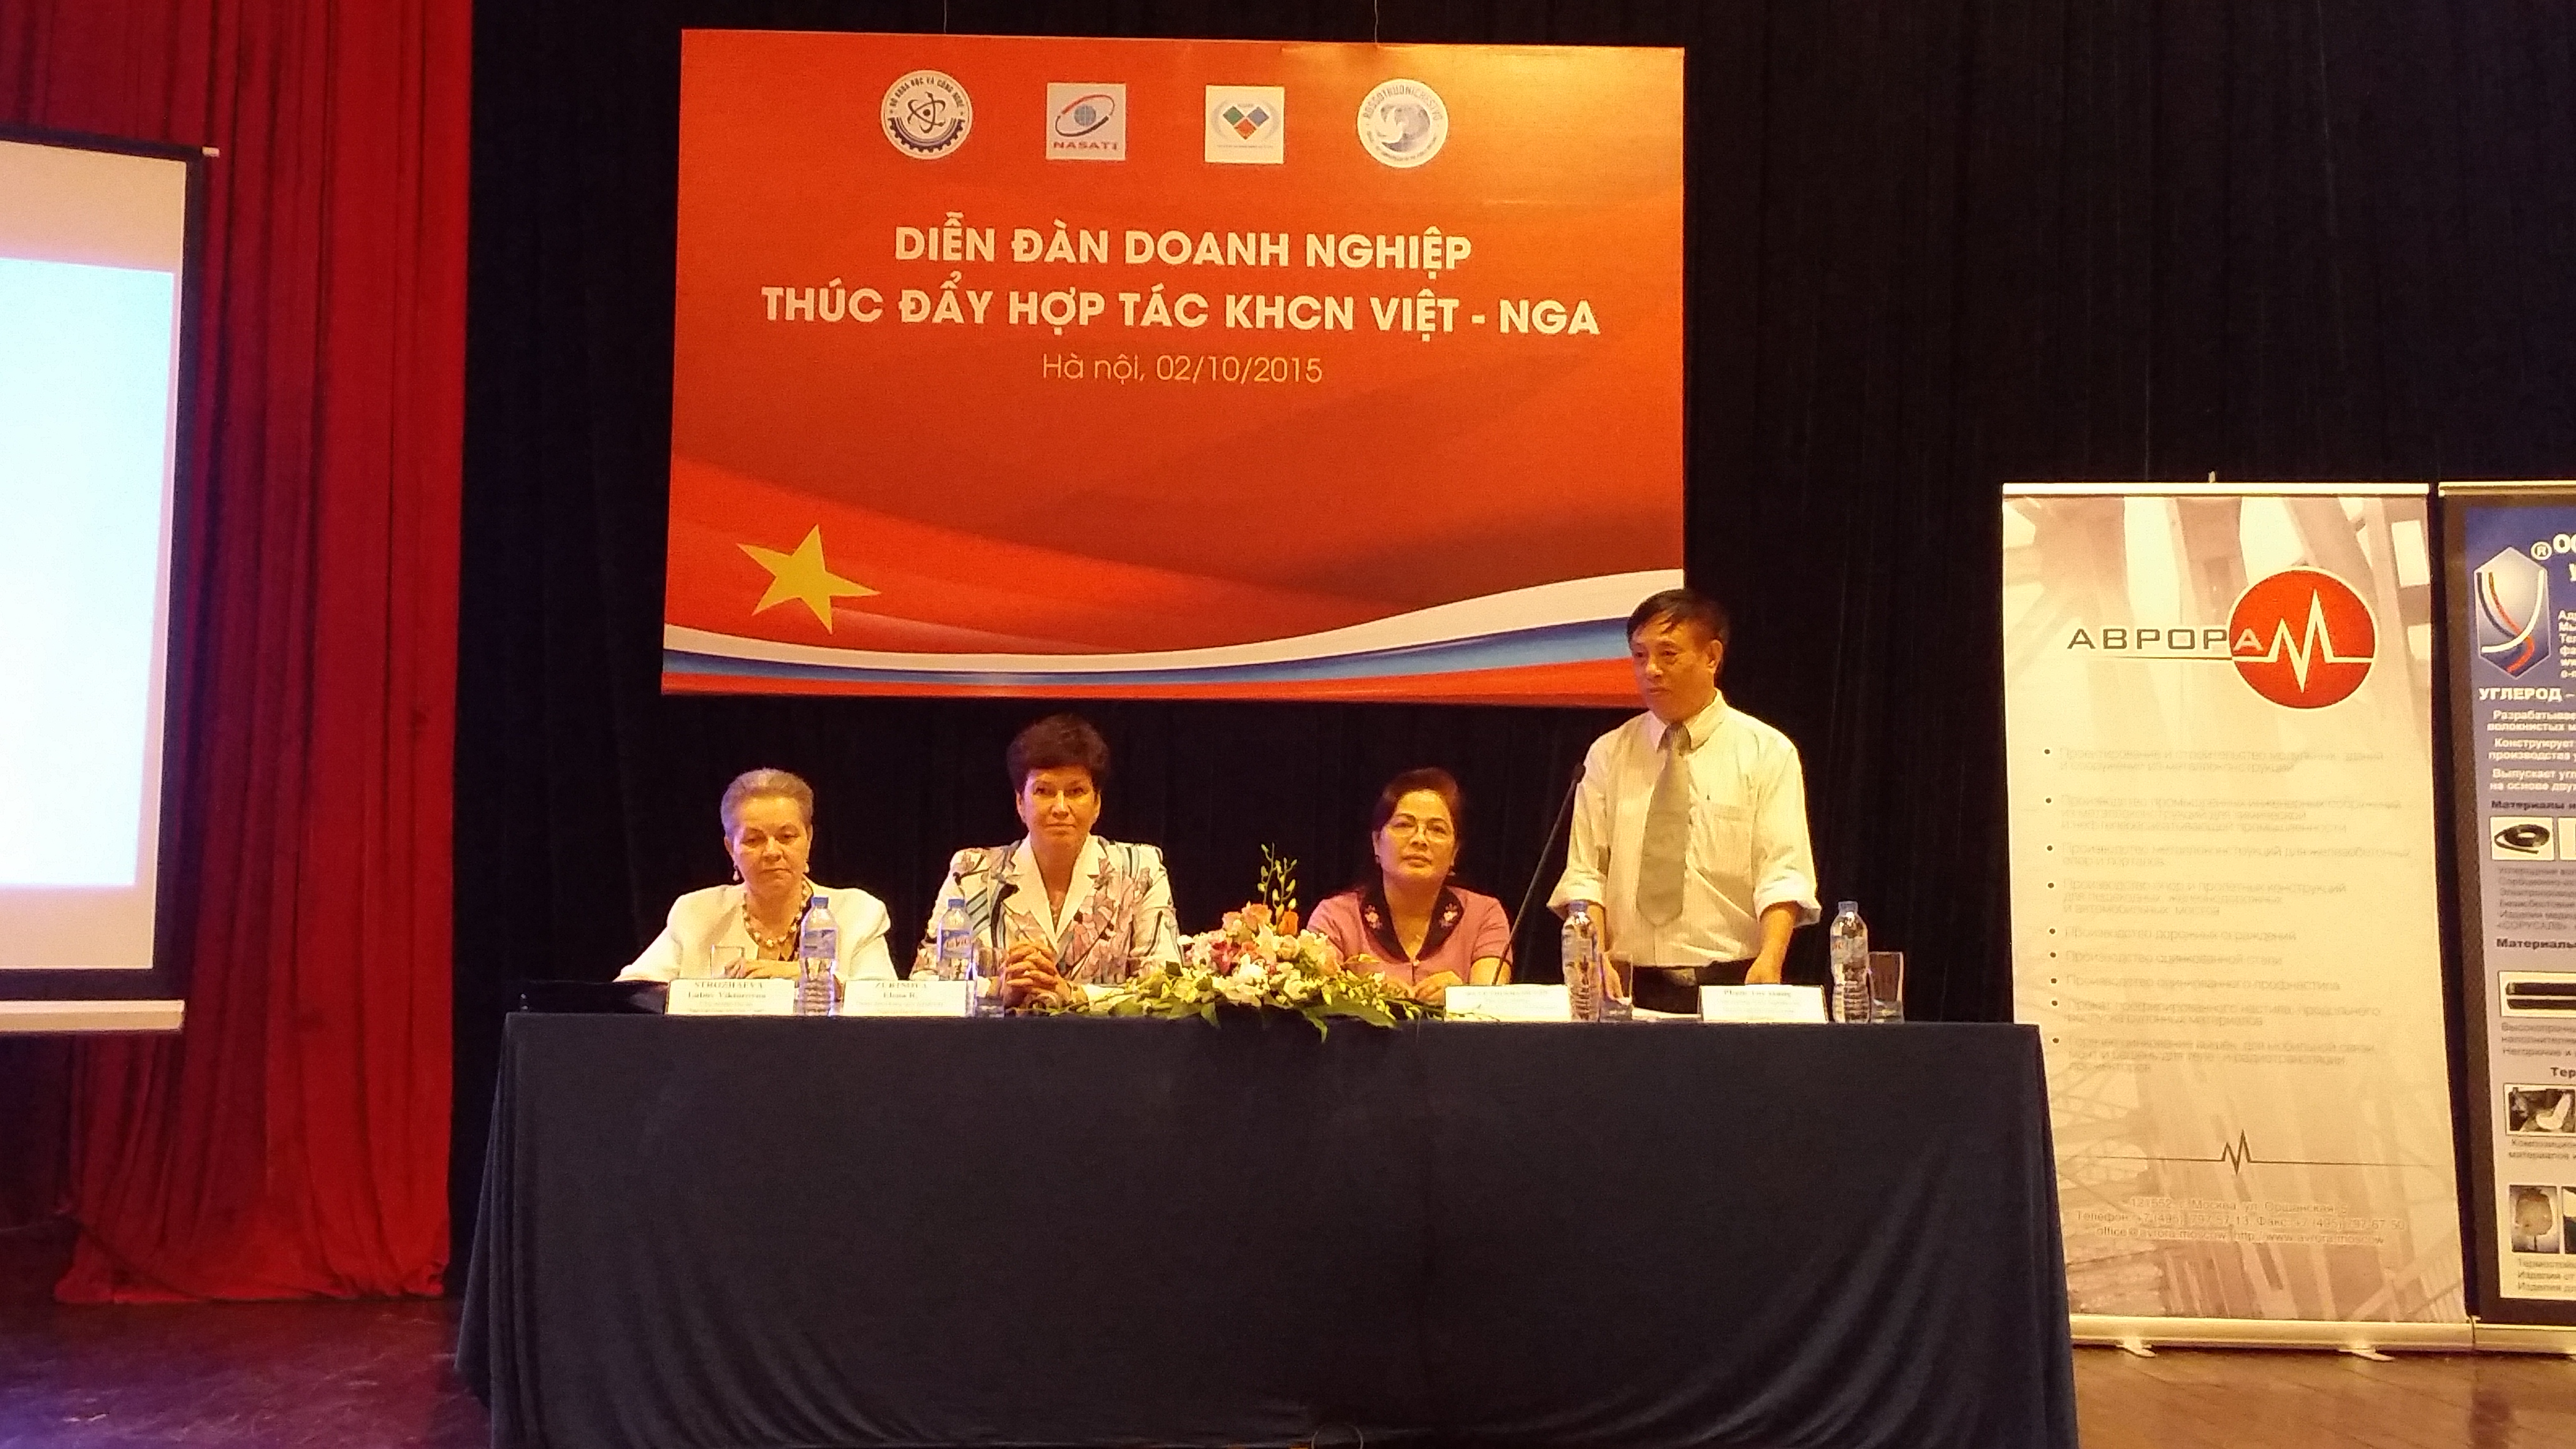 Diễn đàn doanh nghiệp thúc đẩy hợp tác KHCN Việt – Nga